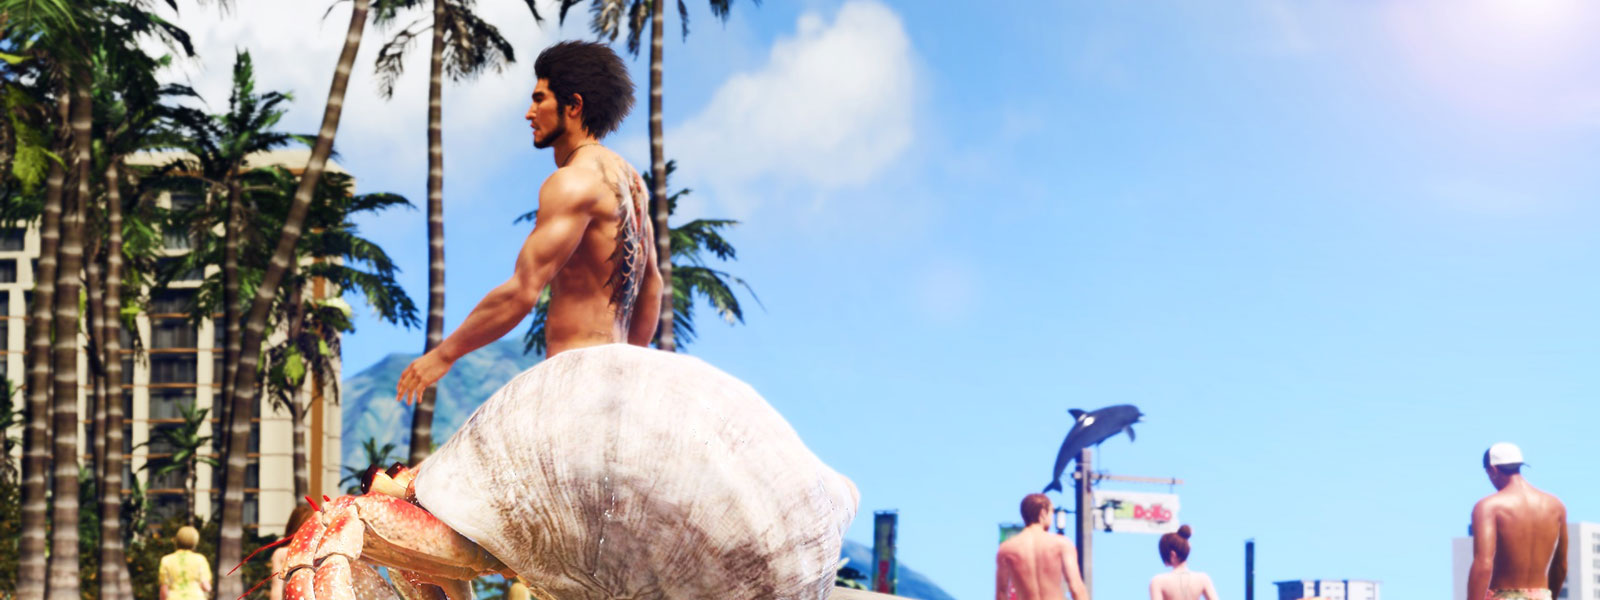 Un homme portant un tatouage Yakuza marche le long d’une plage avec un bernard-l’hermite bloquant sa moitié inférieure.